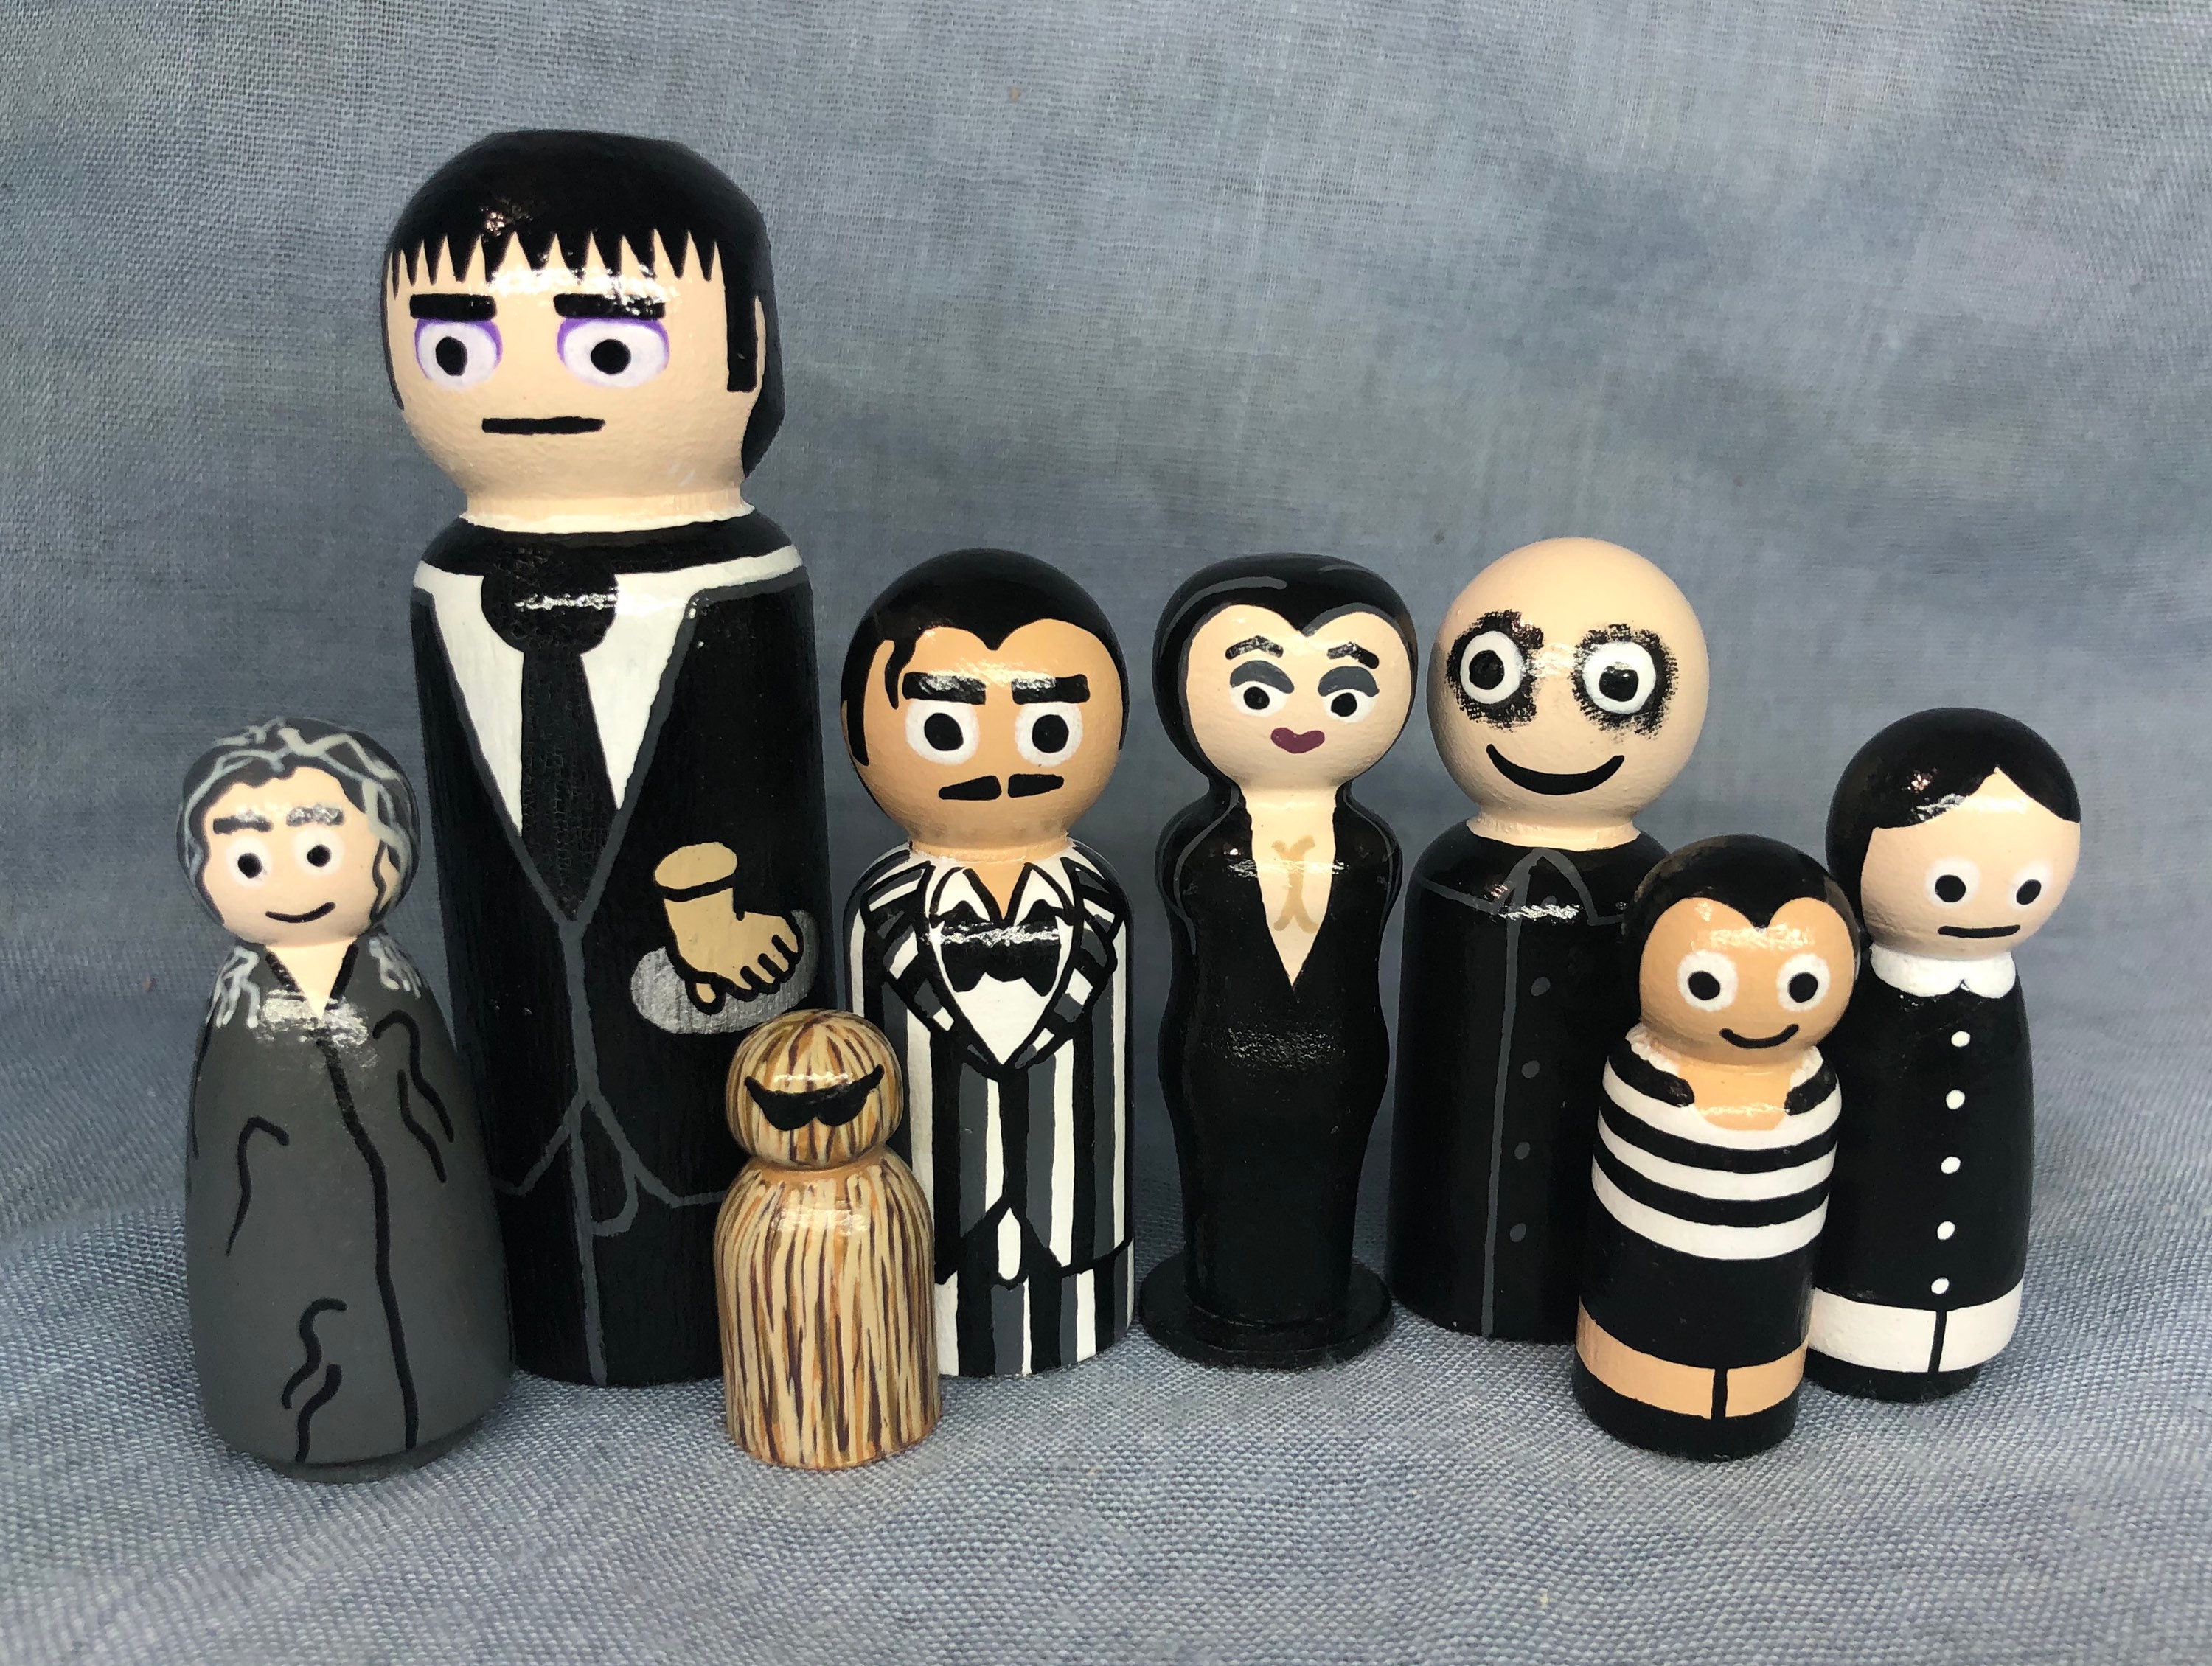 6pcs / set mercredi Addams Family Action Figure Jouet Cadeau pour